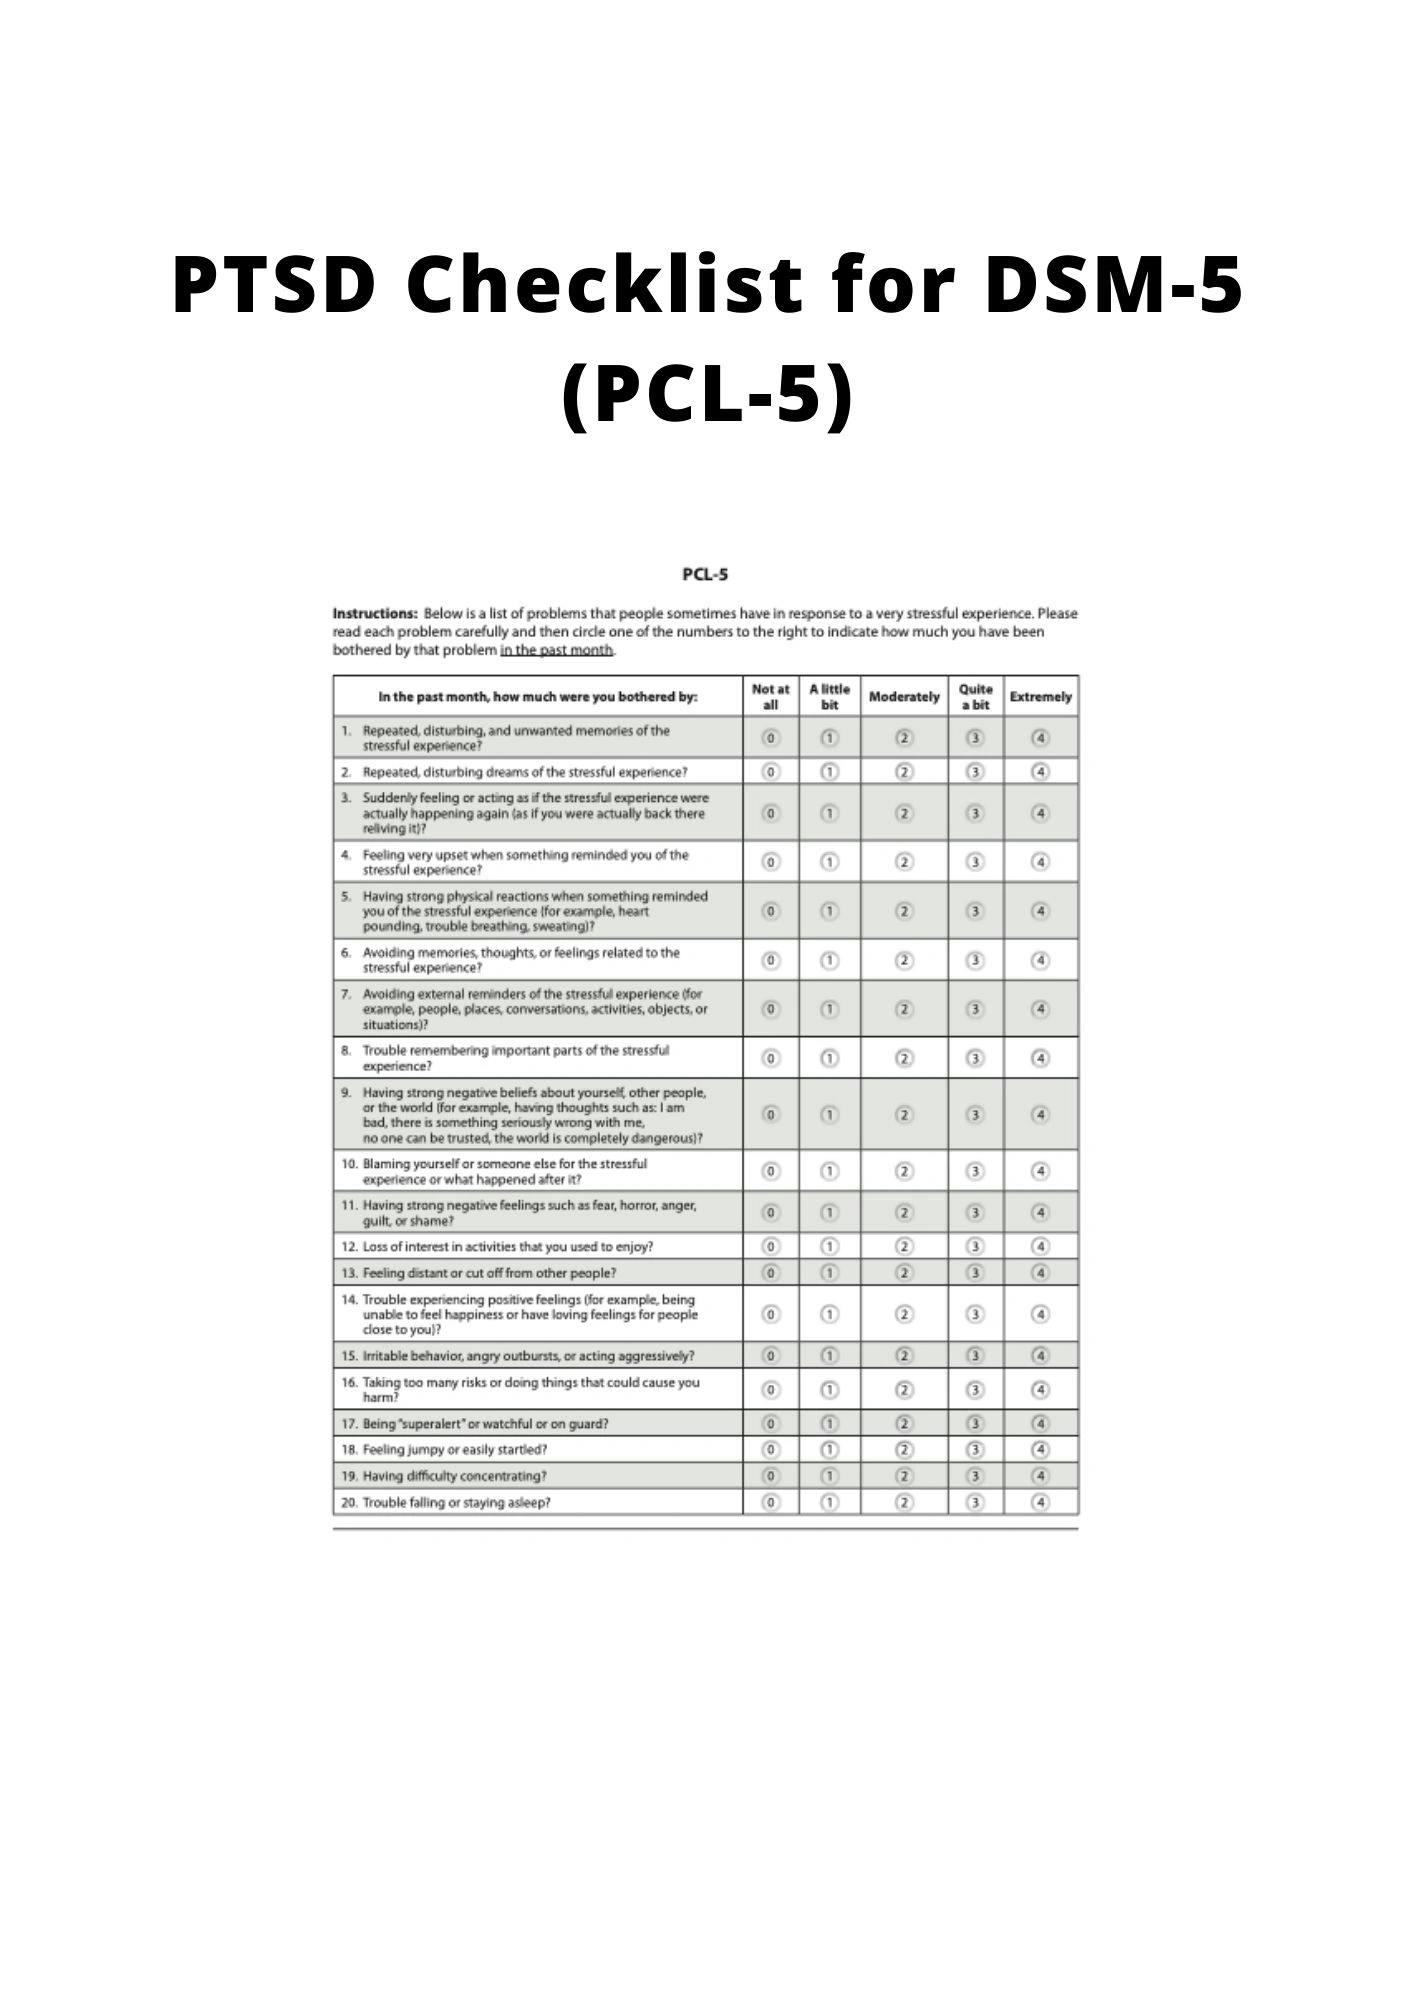 PTSD CHECKLIST FOR DSM5 (PCL5) IASC MHPSS M&E FRAMEWORK MOV Toolkit